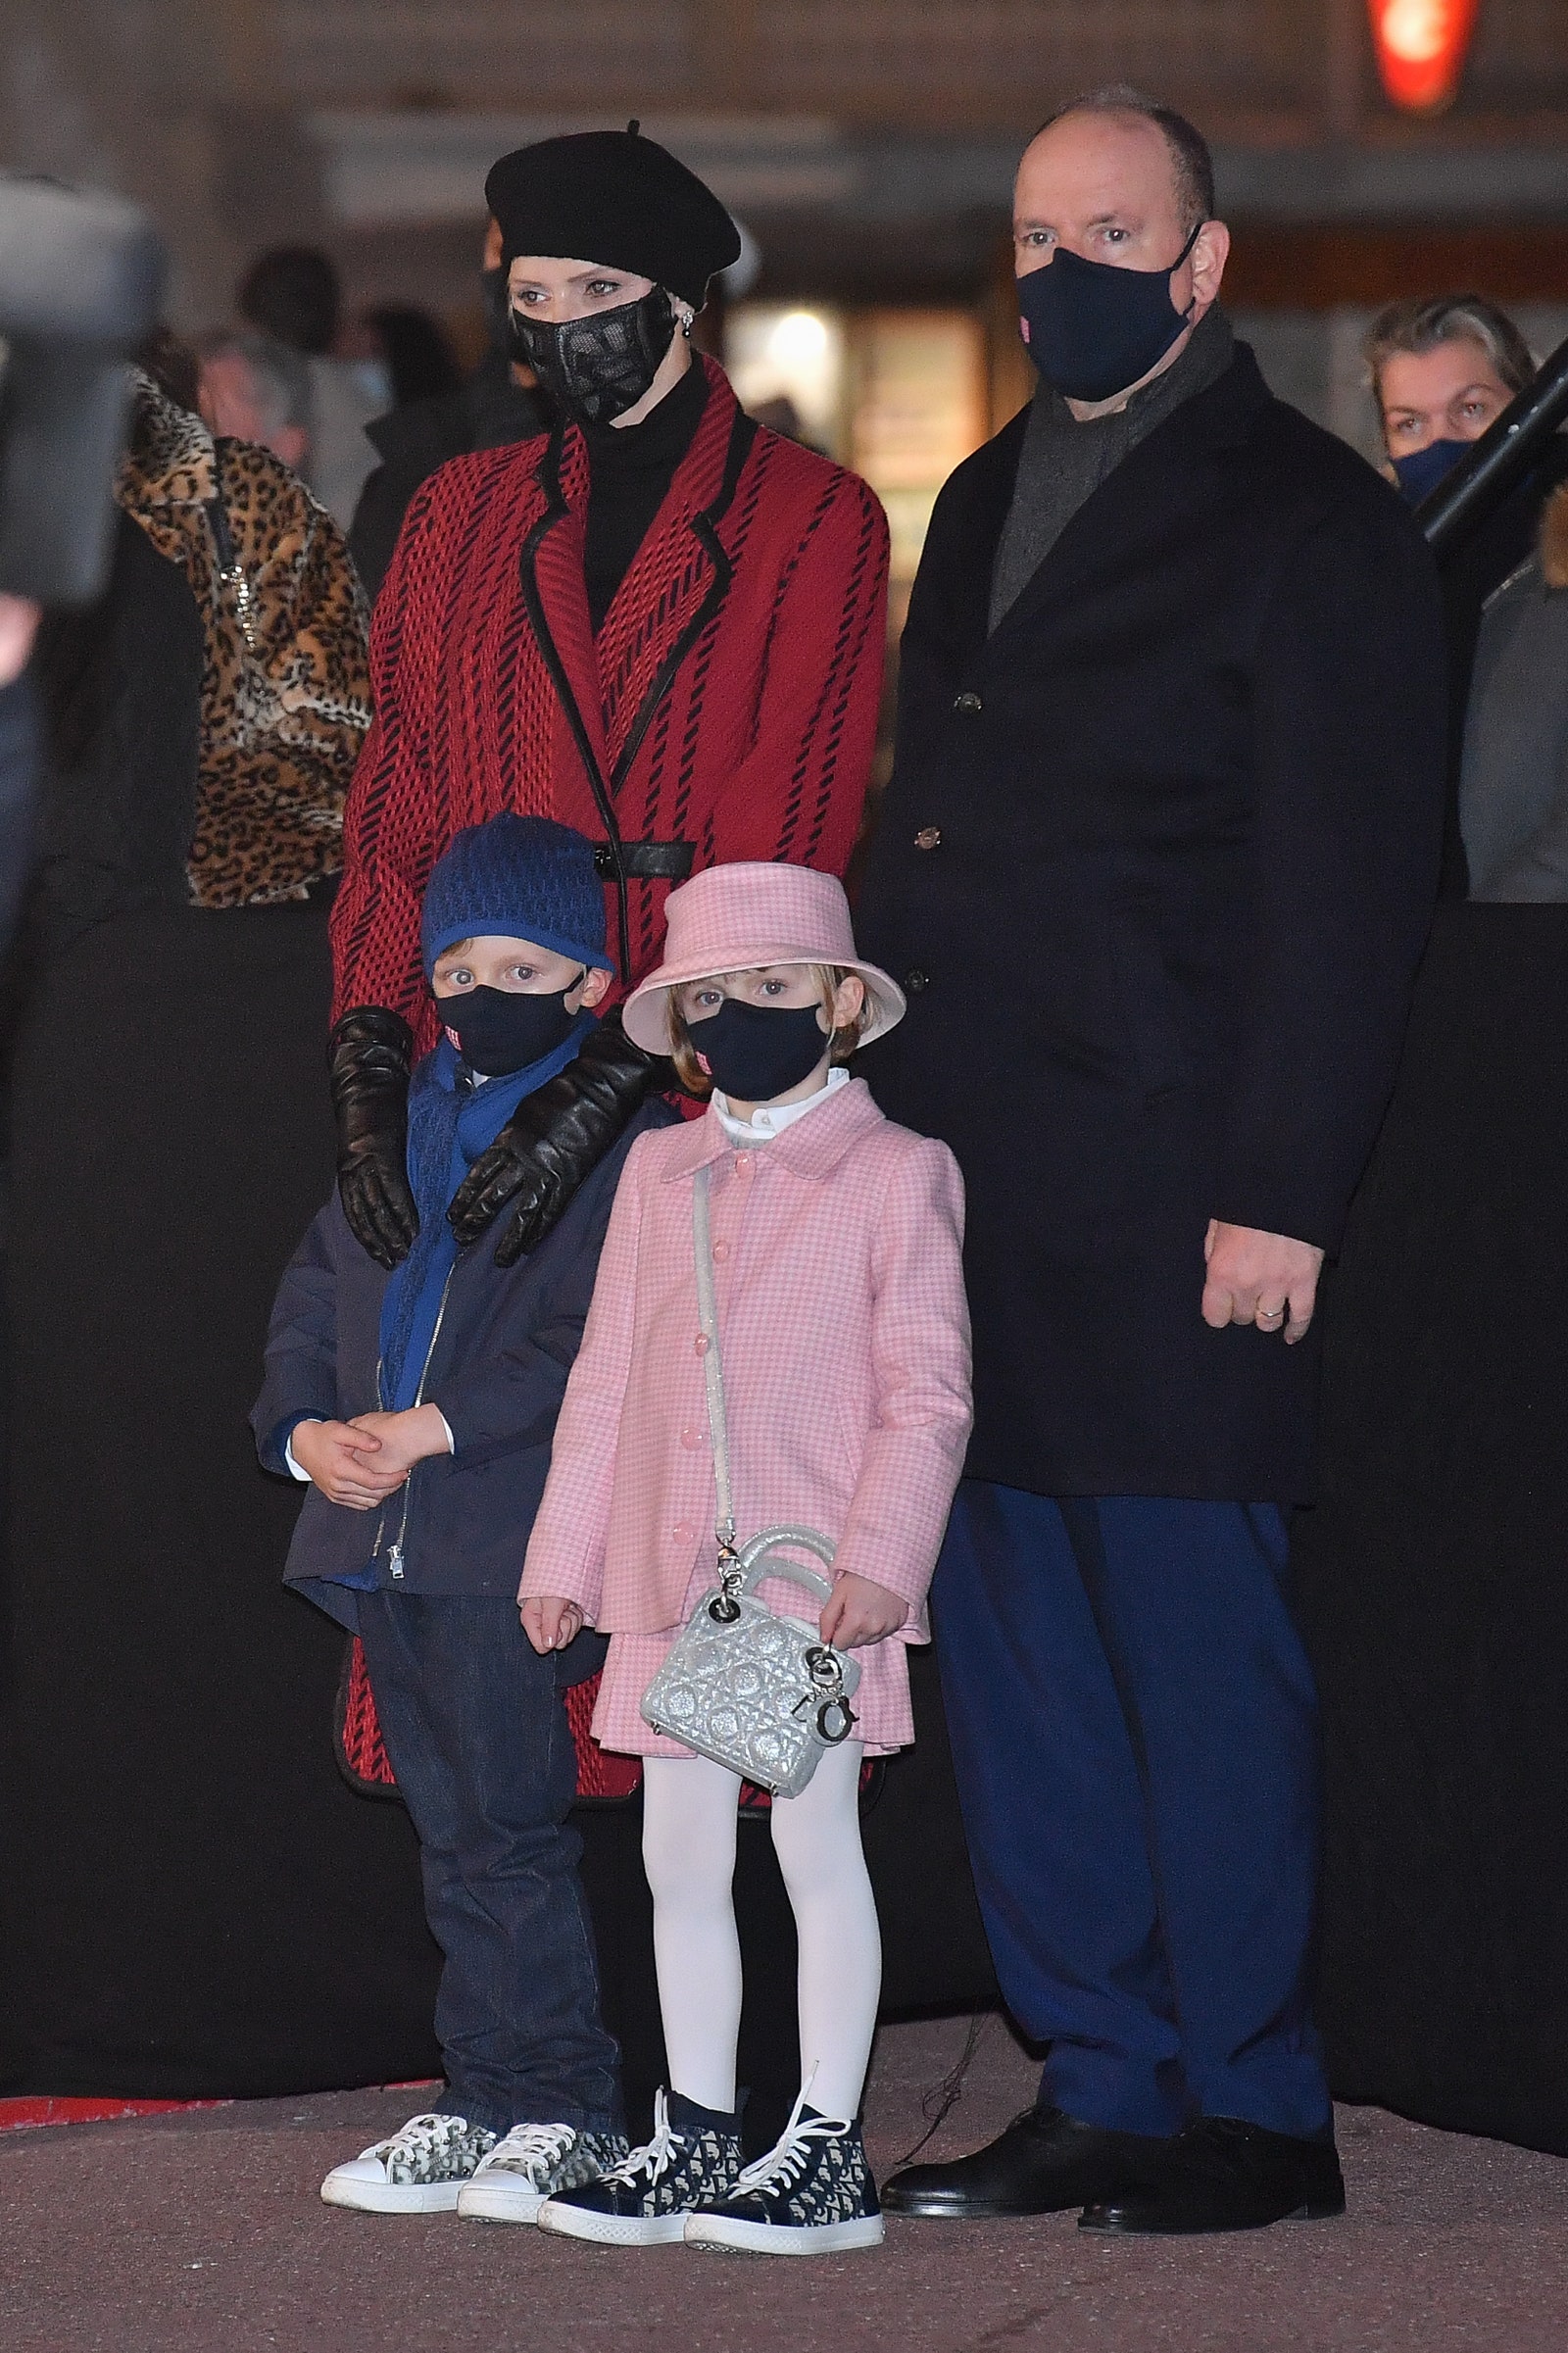 Княгиня Шарлен и князь Альбер II с детьми отметили День святой Девоты в Монако